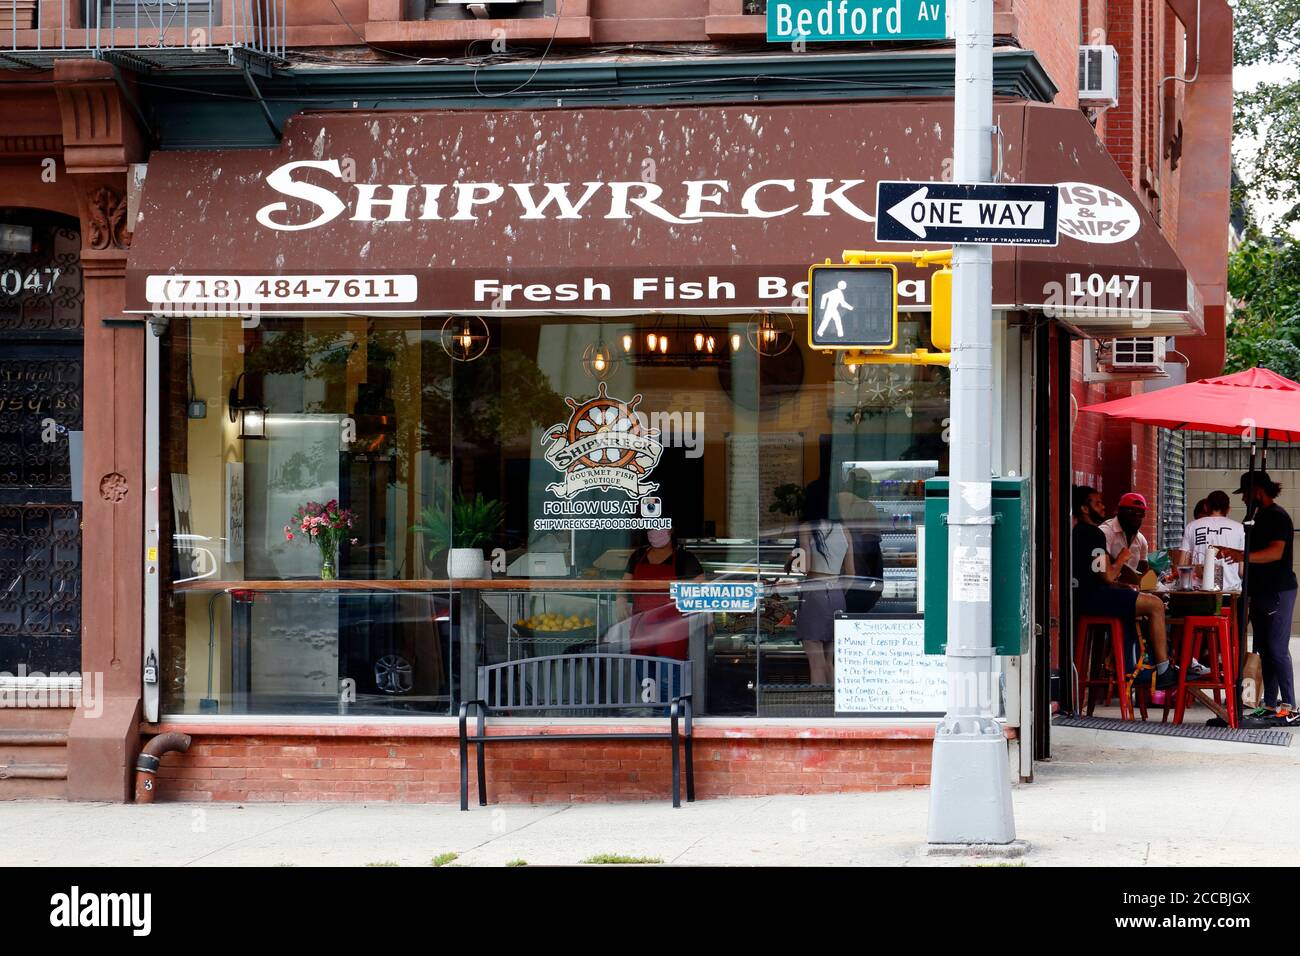 Shipwreck Seafood Boutique, 1047 Bedford Ave, Brooklyn, Nueva York. Foto del escaparate de Nueva York de un pez y patatas fritas, pescadería en el barrio de Bedford Stuyvesant Foto de stock